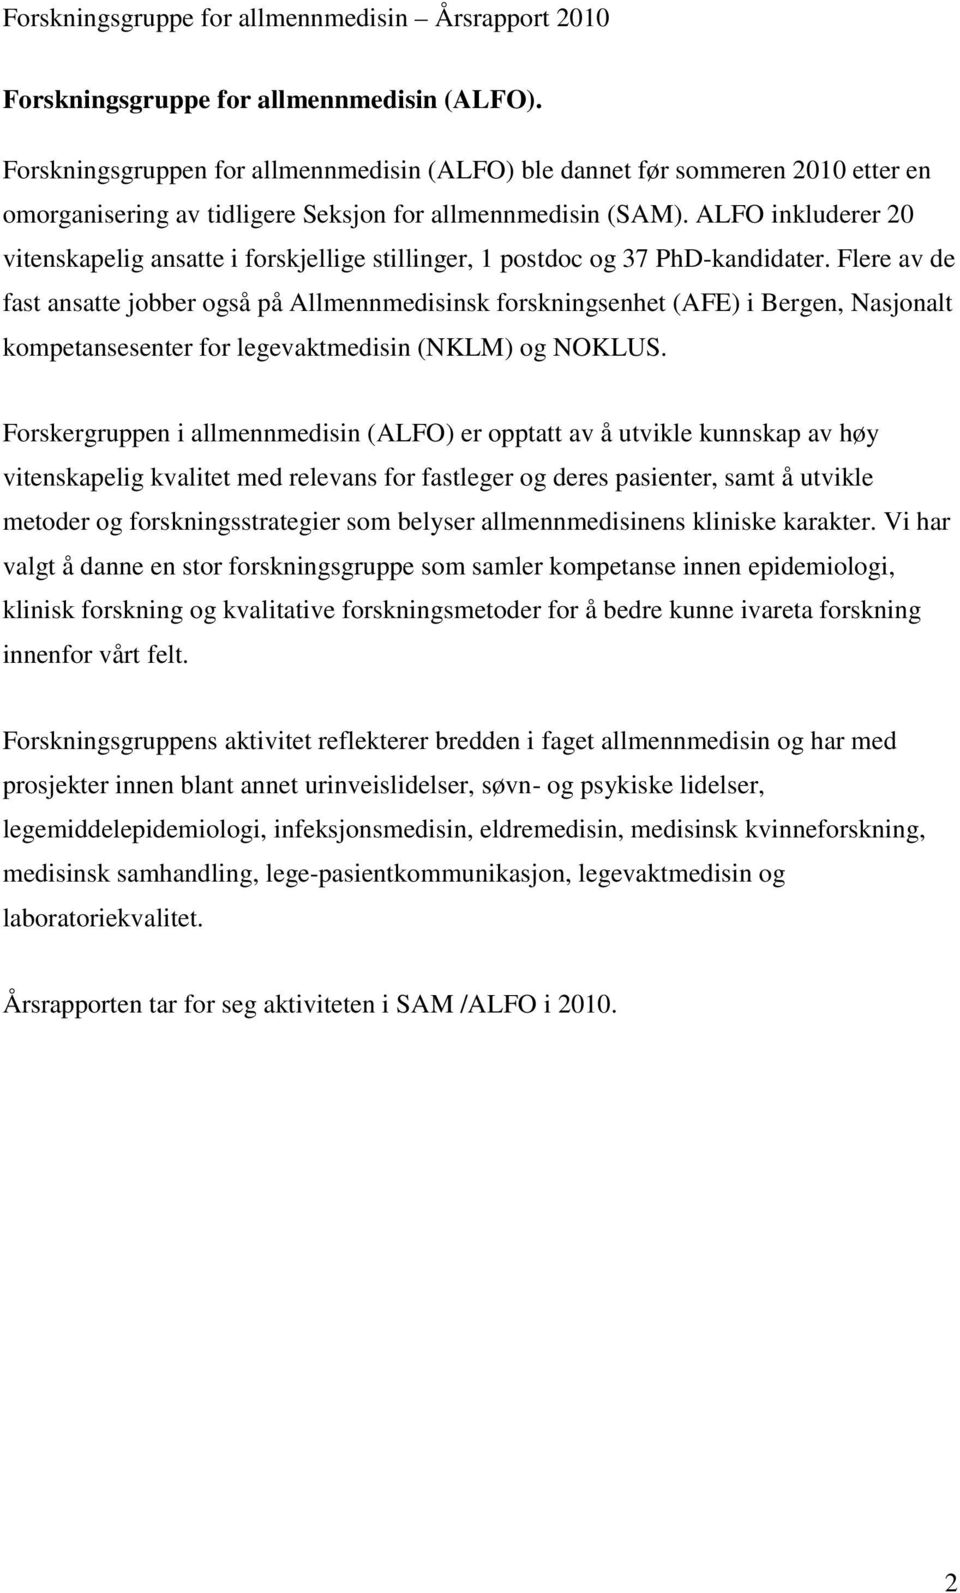 Flere av de fast ansatte jobber også på Allmennmedisinsk forskningsenhet (AFE) i Bergen, Nasjonalt kompetansesenter for legevaktmedisin (NKLM) og NOKLUS.